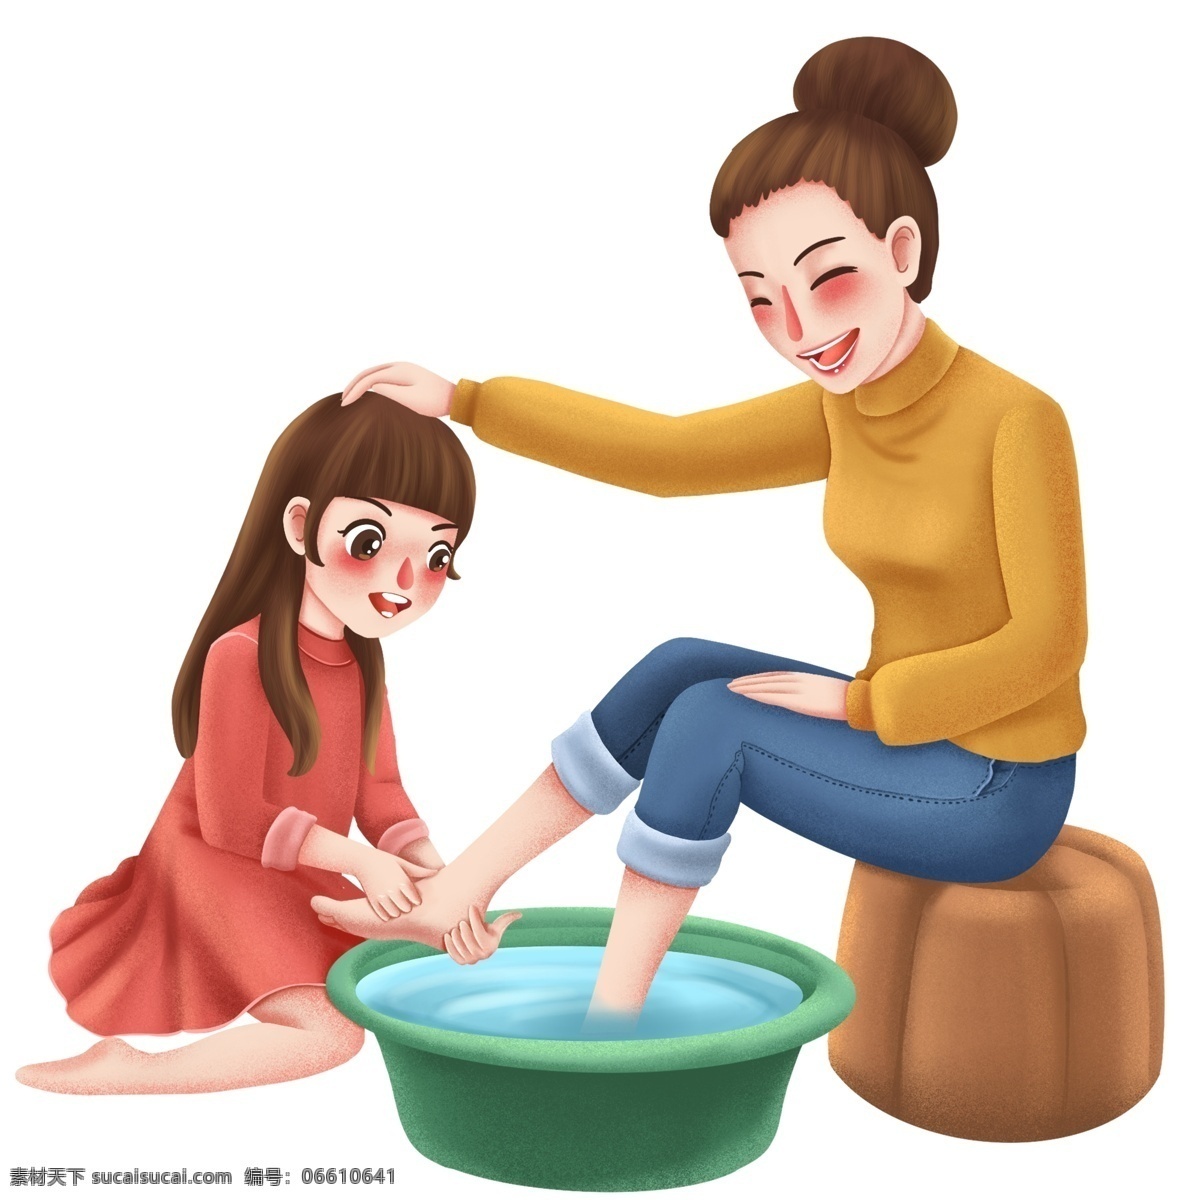 温馨 母亲节 女儿 妈妈 洗 脚 手绘 治愈系 插画 女孩 洗脚场景